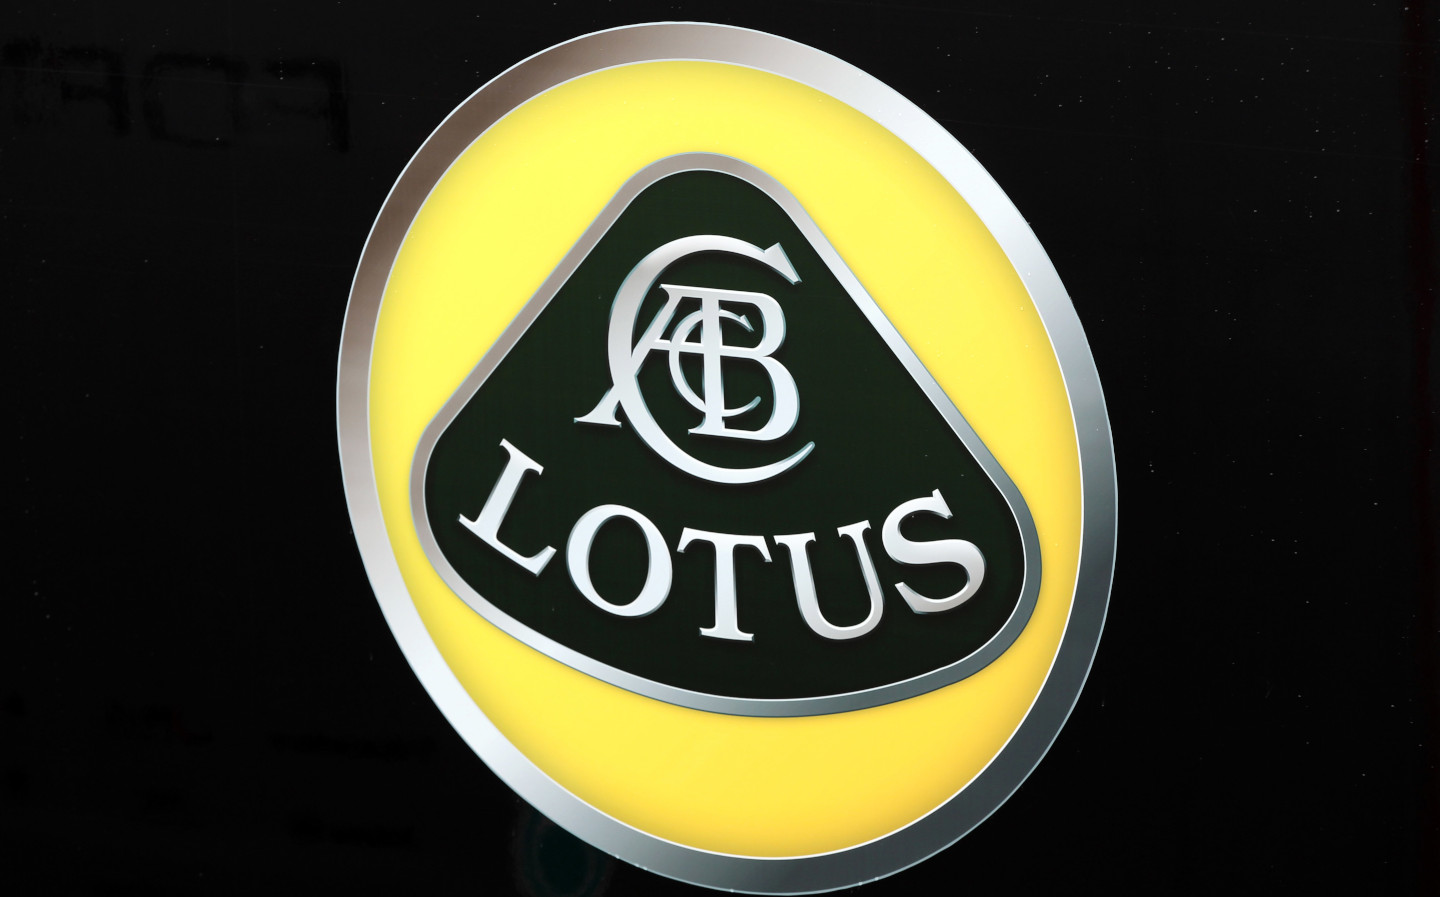 Lotus 131